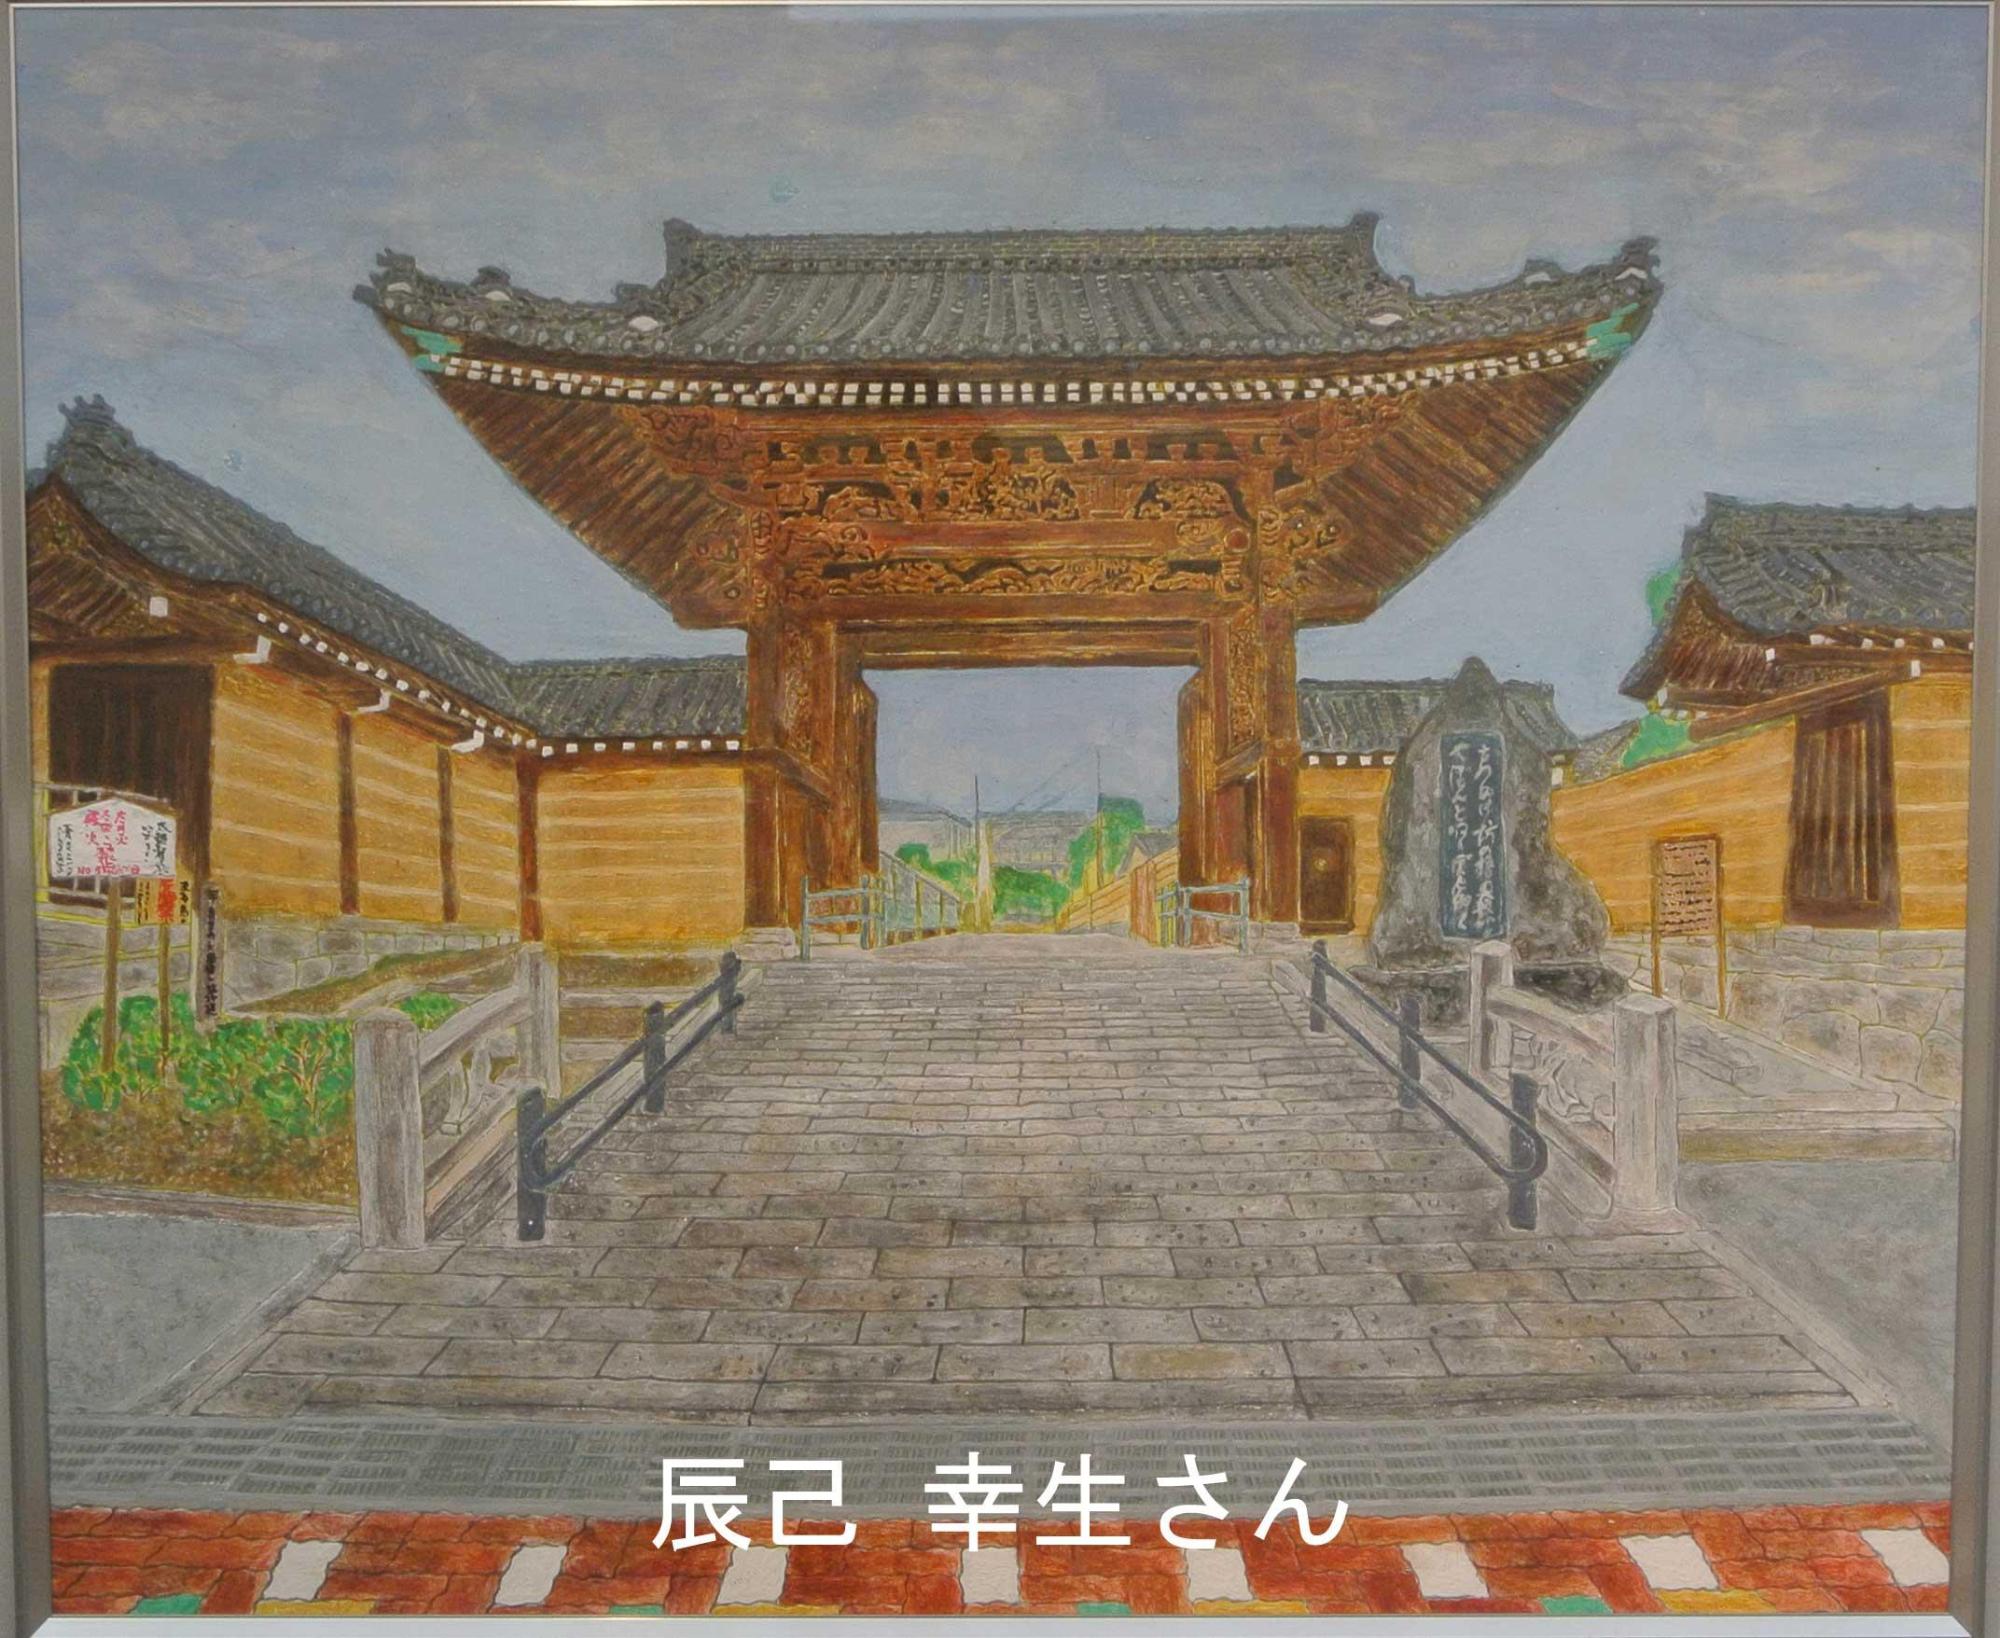 お寺の楼門を内側から描いた日本画部門の大賞受賞作品